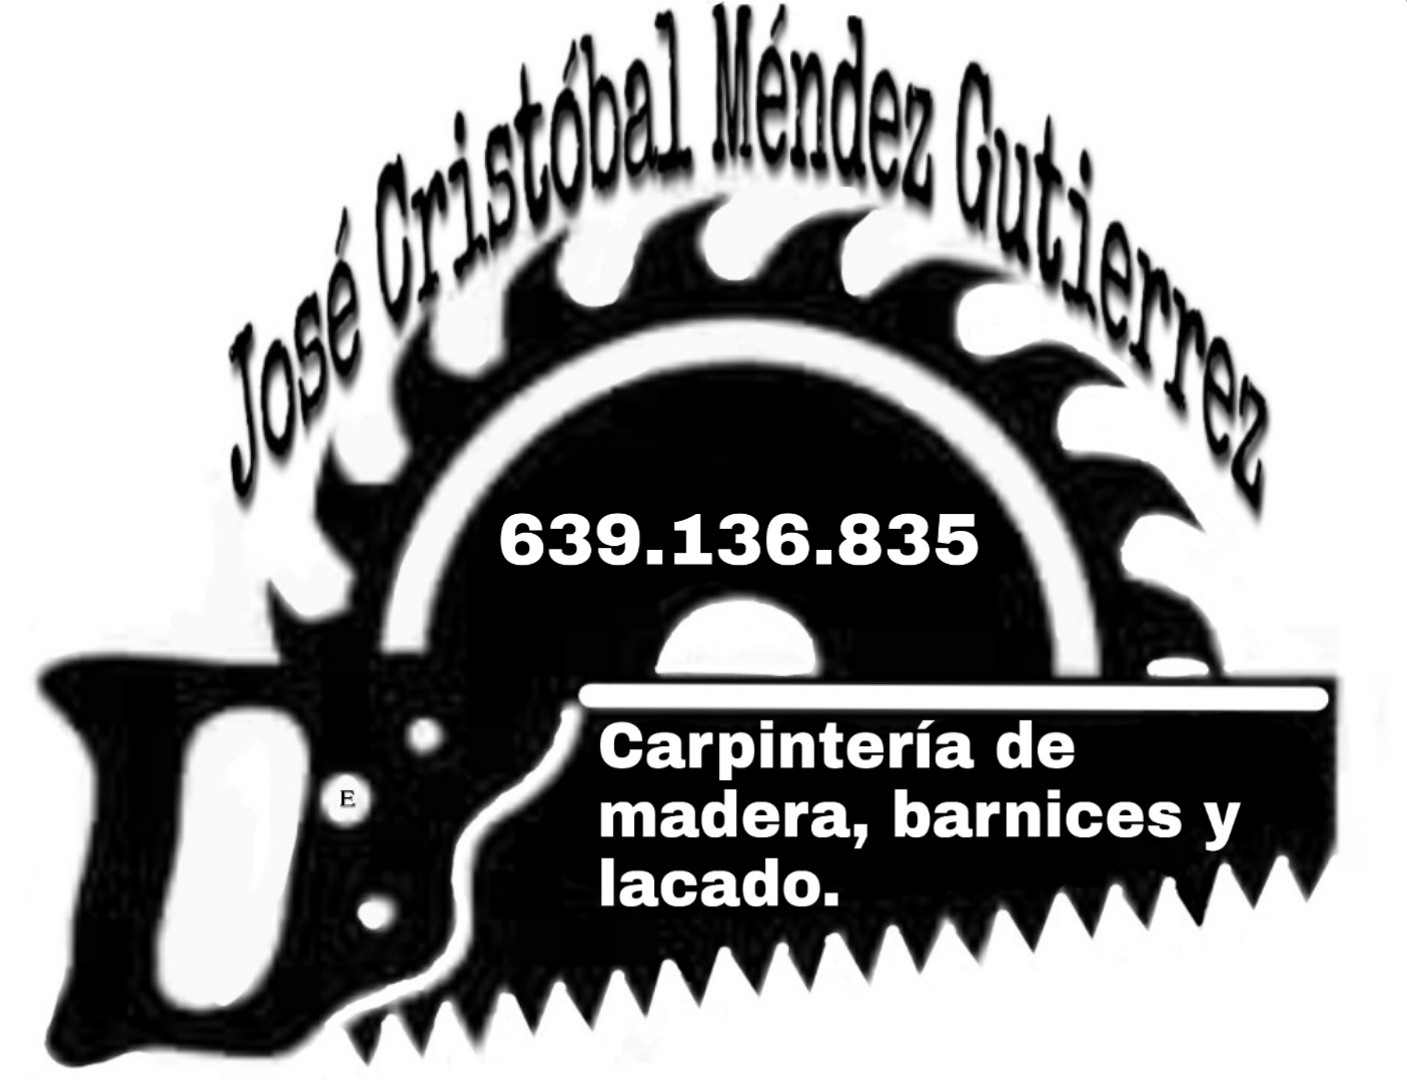 Carpintería J.C Méndez